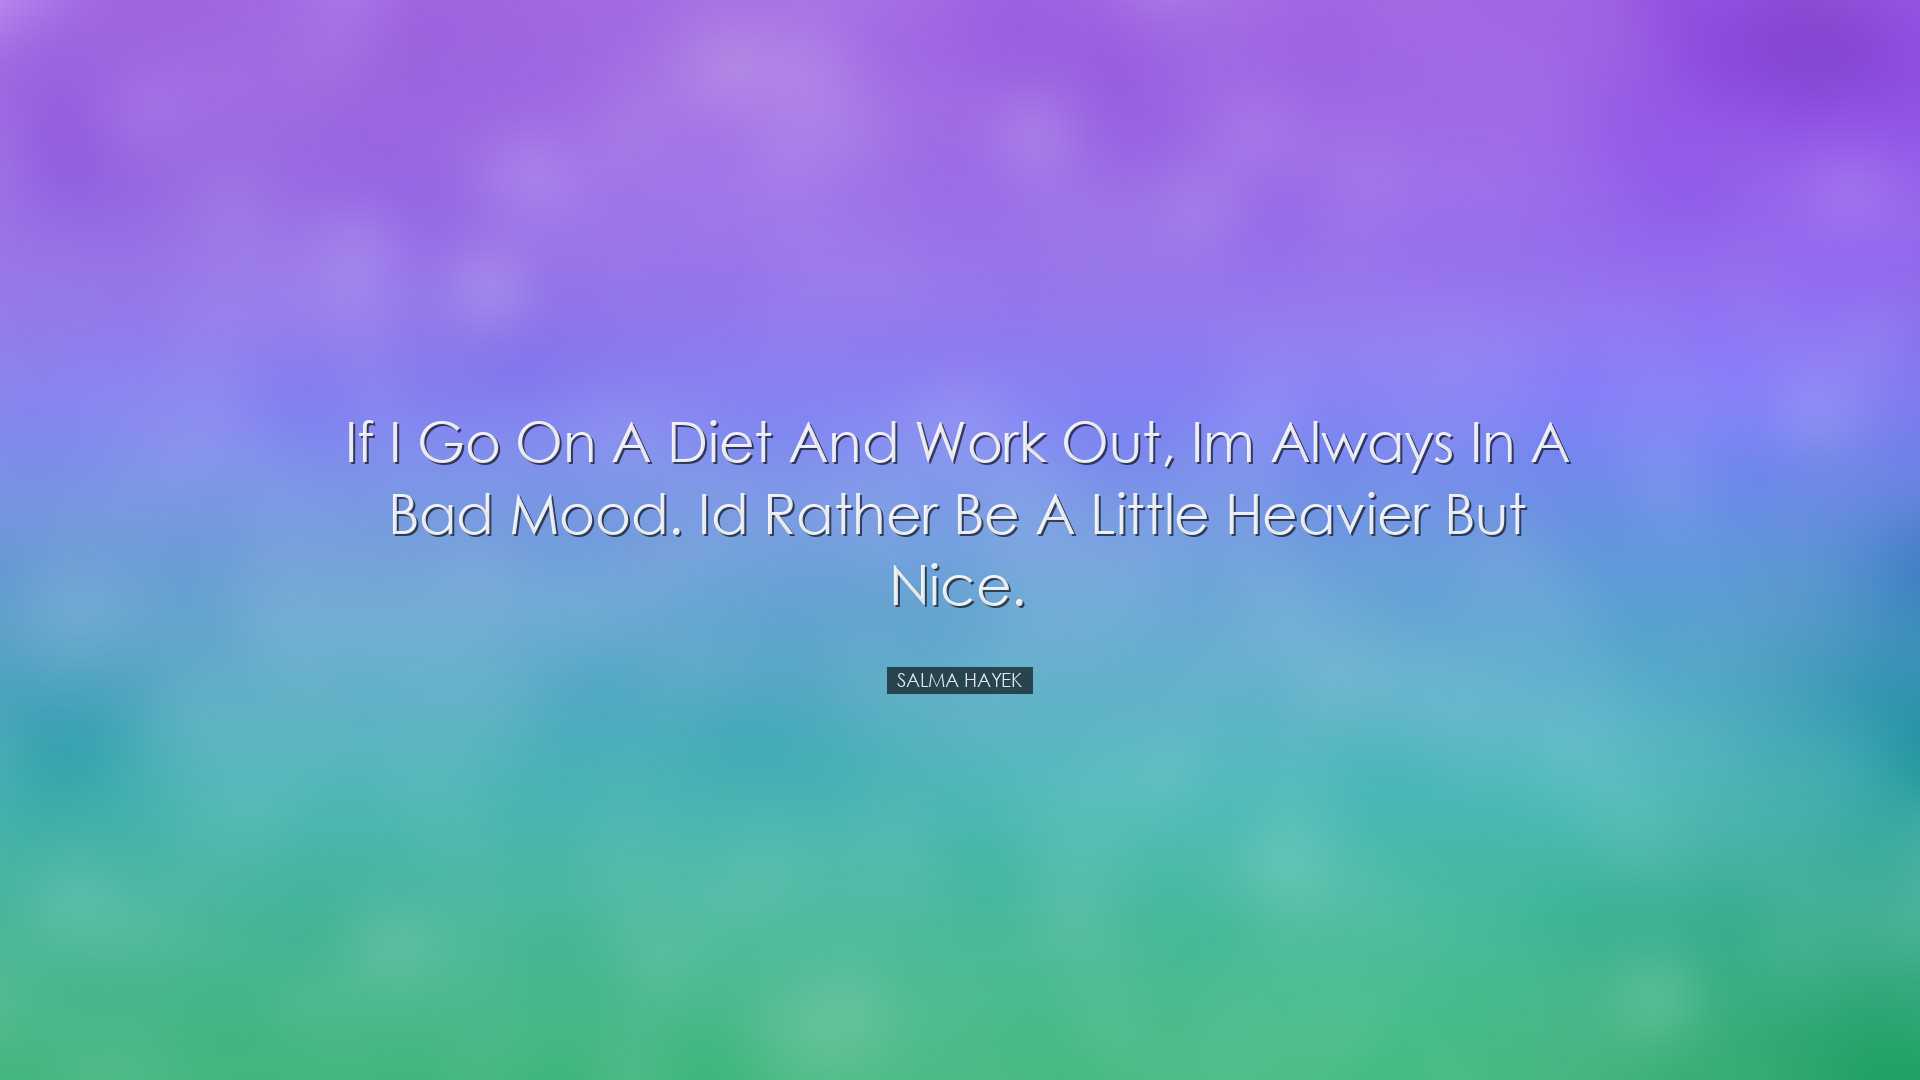 If I go on a diet and work out, Im always in a bad mood. Id rather